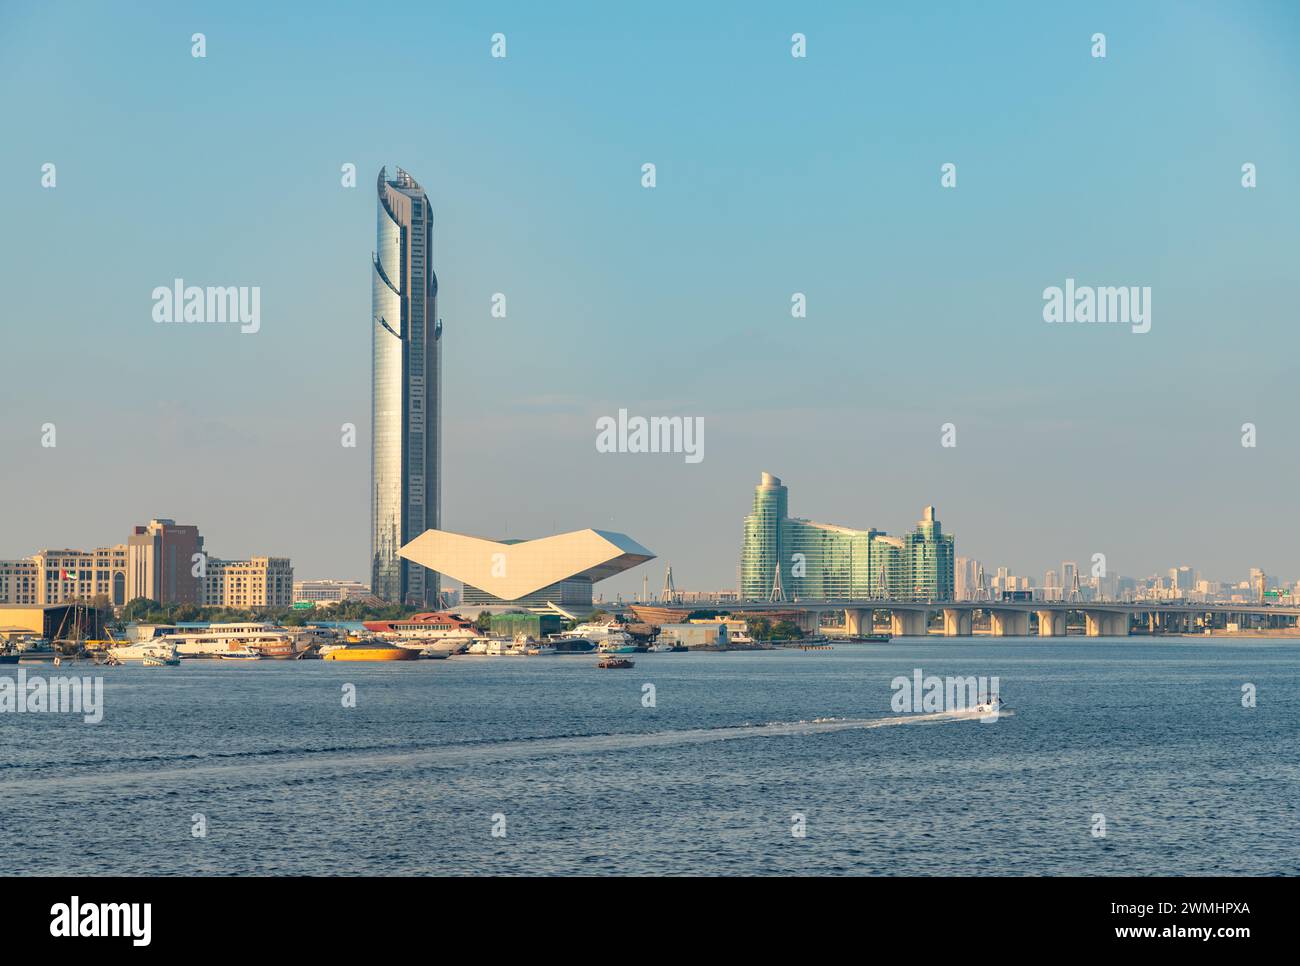 Ein Bild des Dubai Creek, mit der Mohammed bin Rashid Library, dem D1 Tower und dem InterContinental Residence Suites Dubai F.C., einem IHG Hotel Visibl Stockfoto